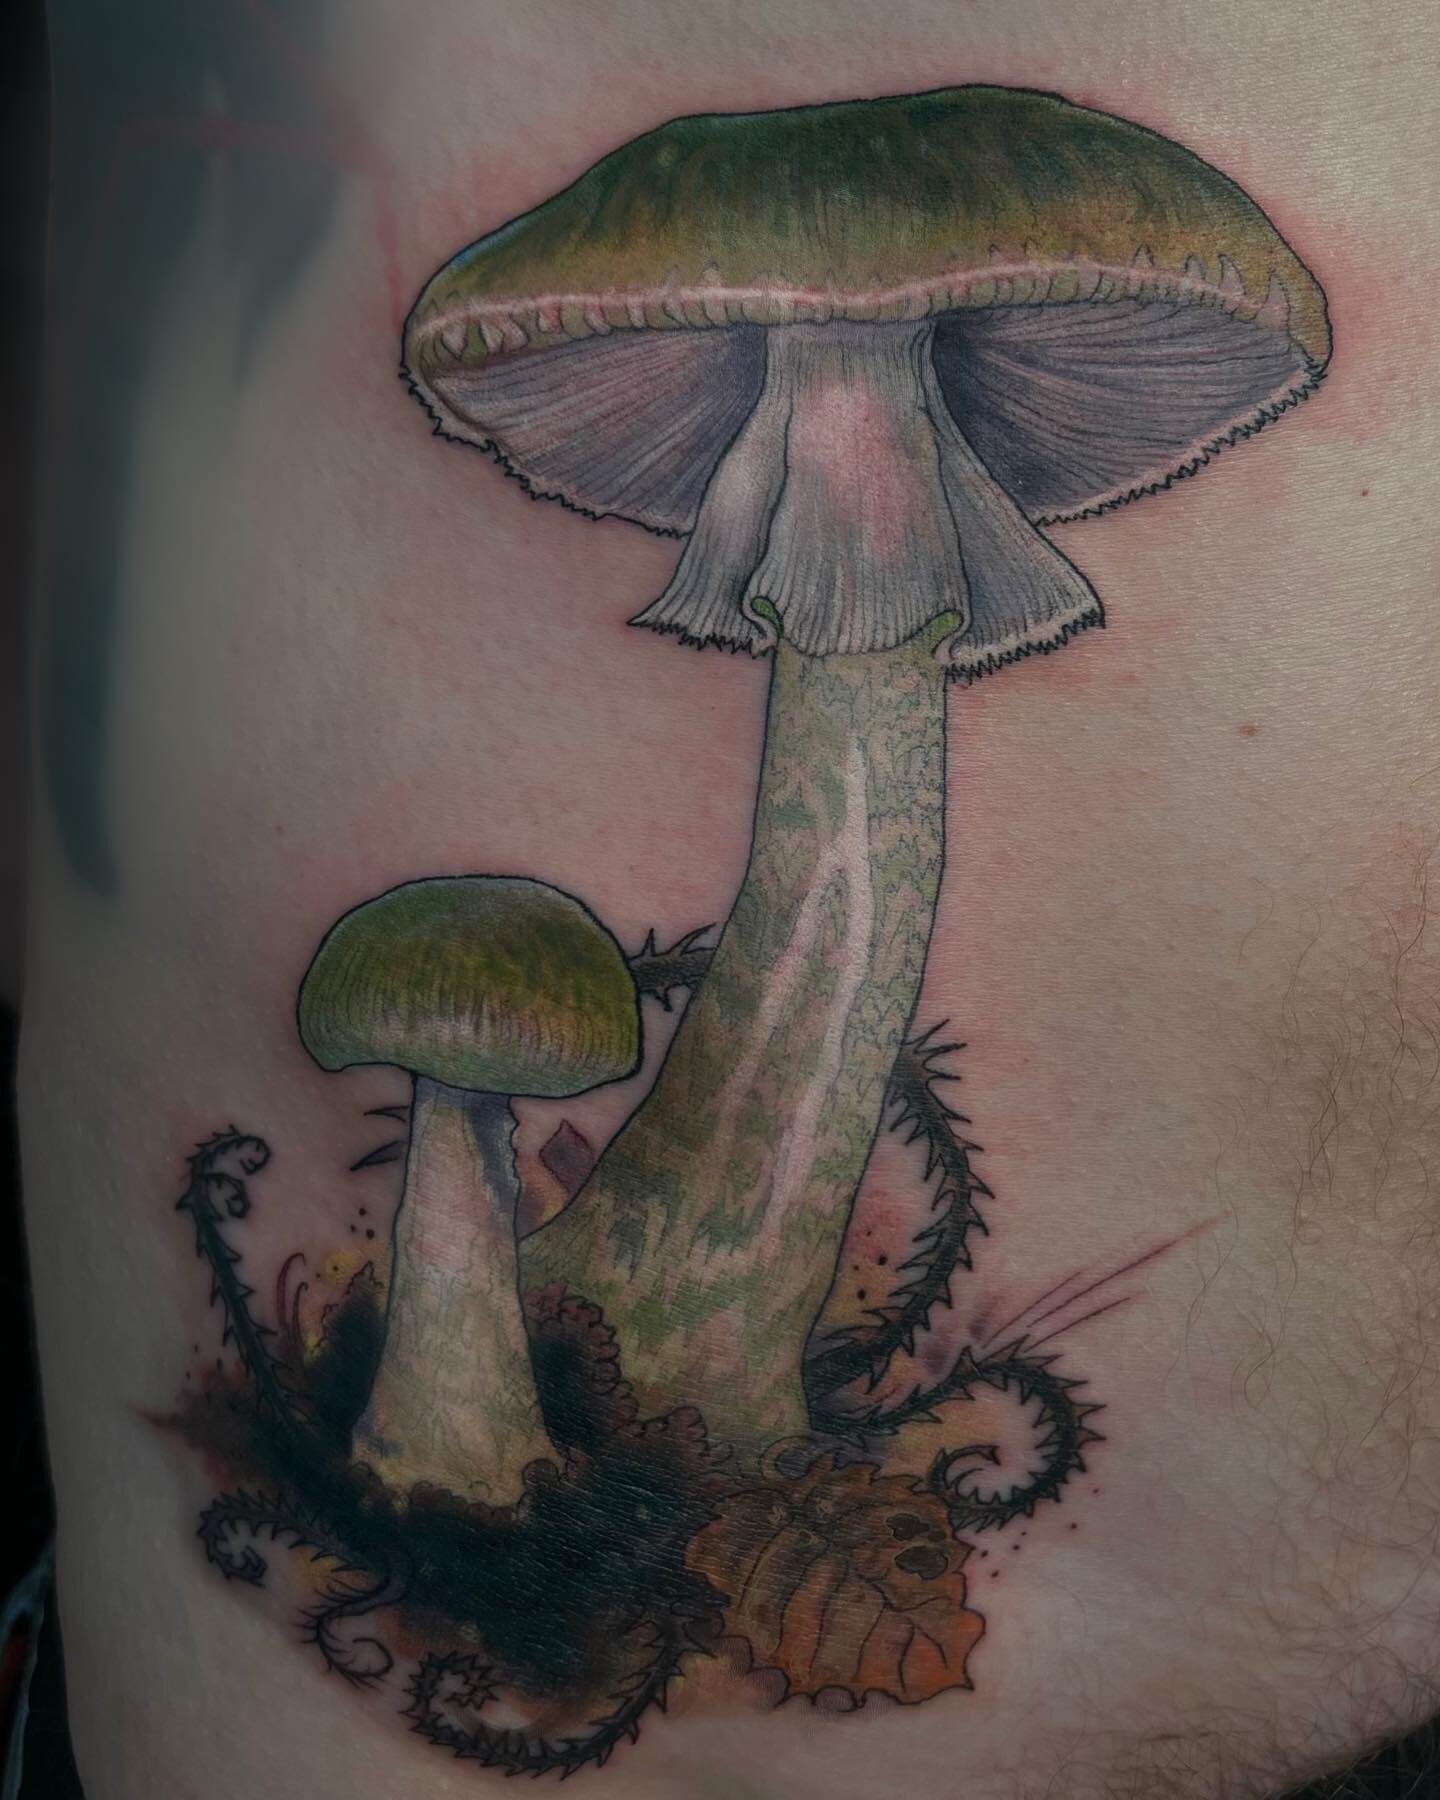 ⚡️Death cap &lsquo;Amanita phalloides&rsquo;⚡️
.
#fungi #mushroomguerrilla #tattoo